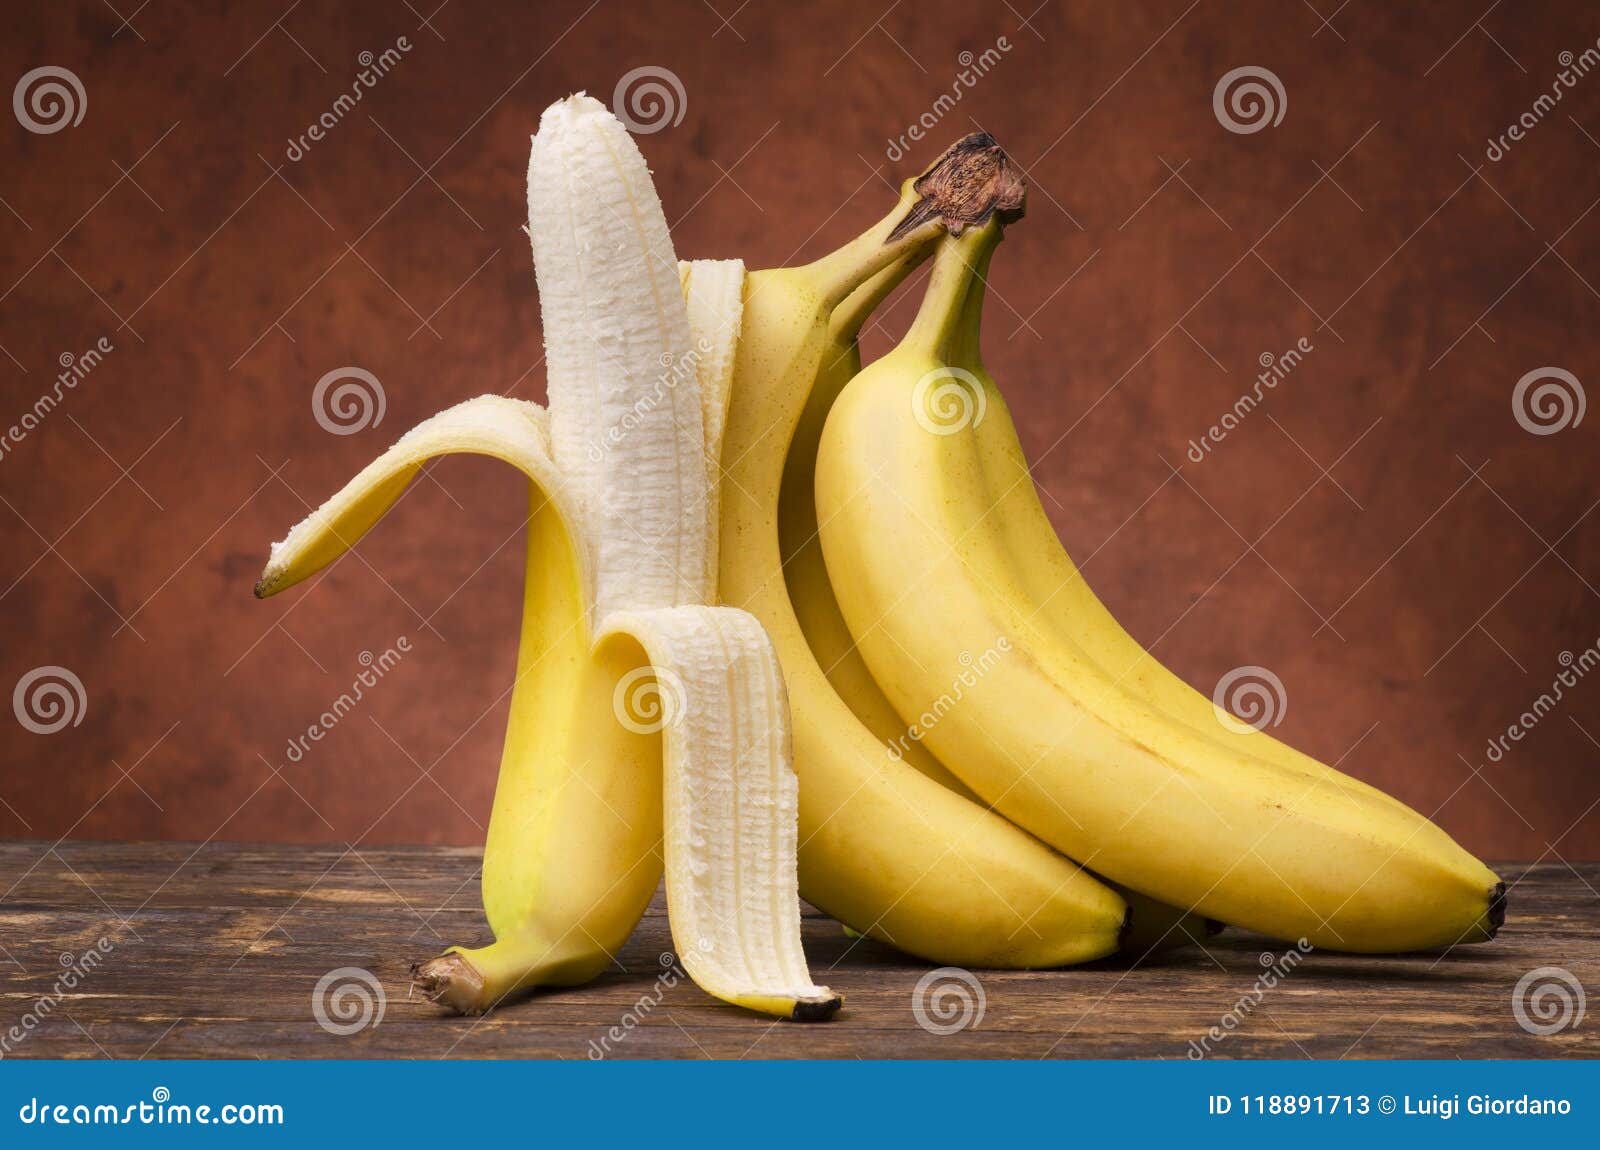 Banana as stocking